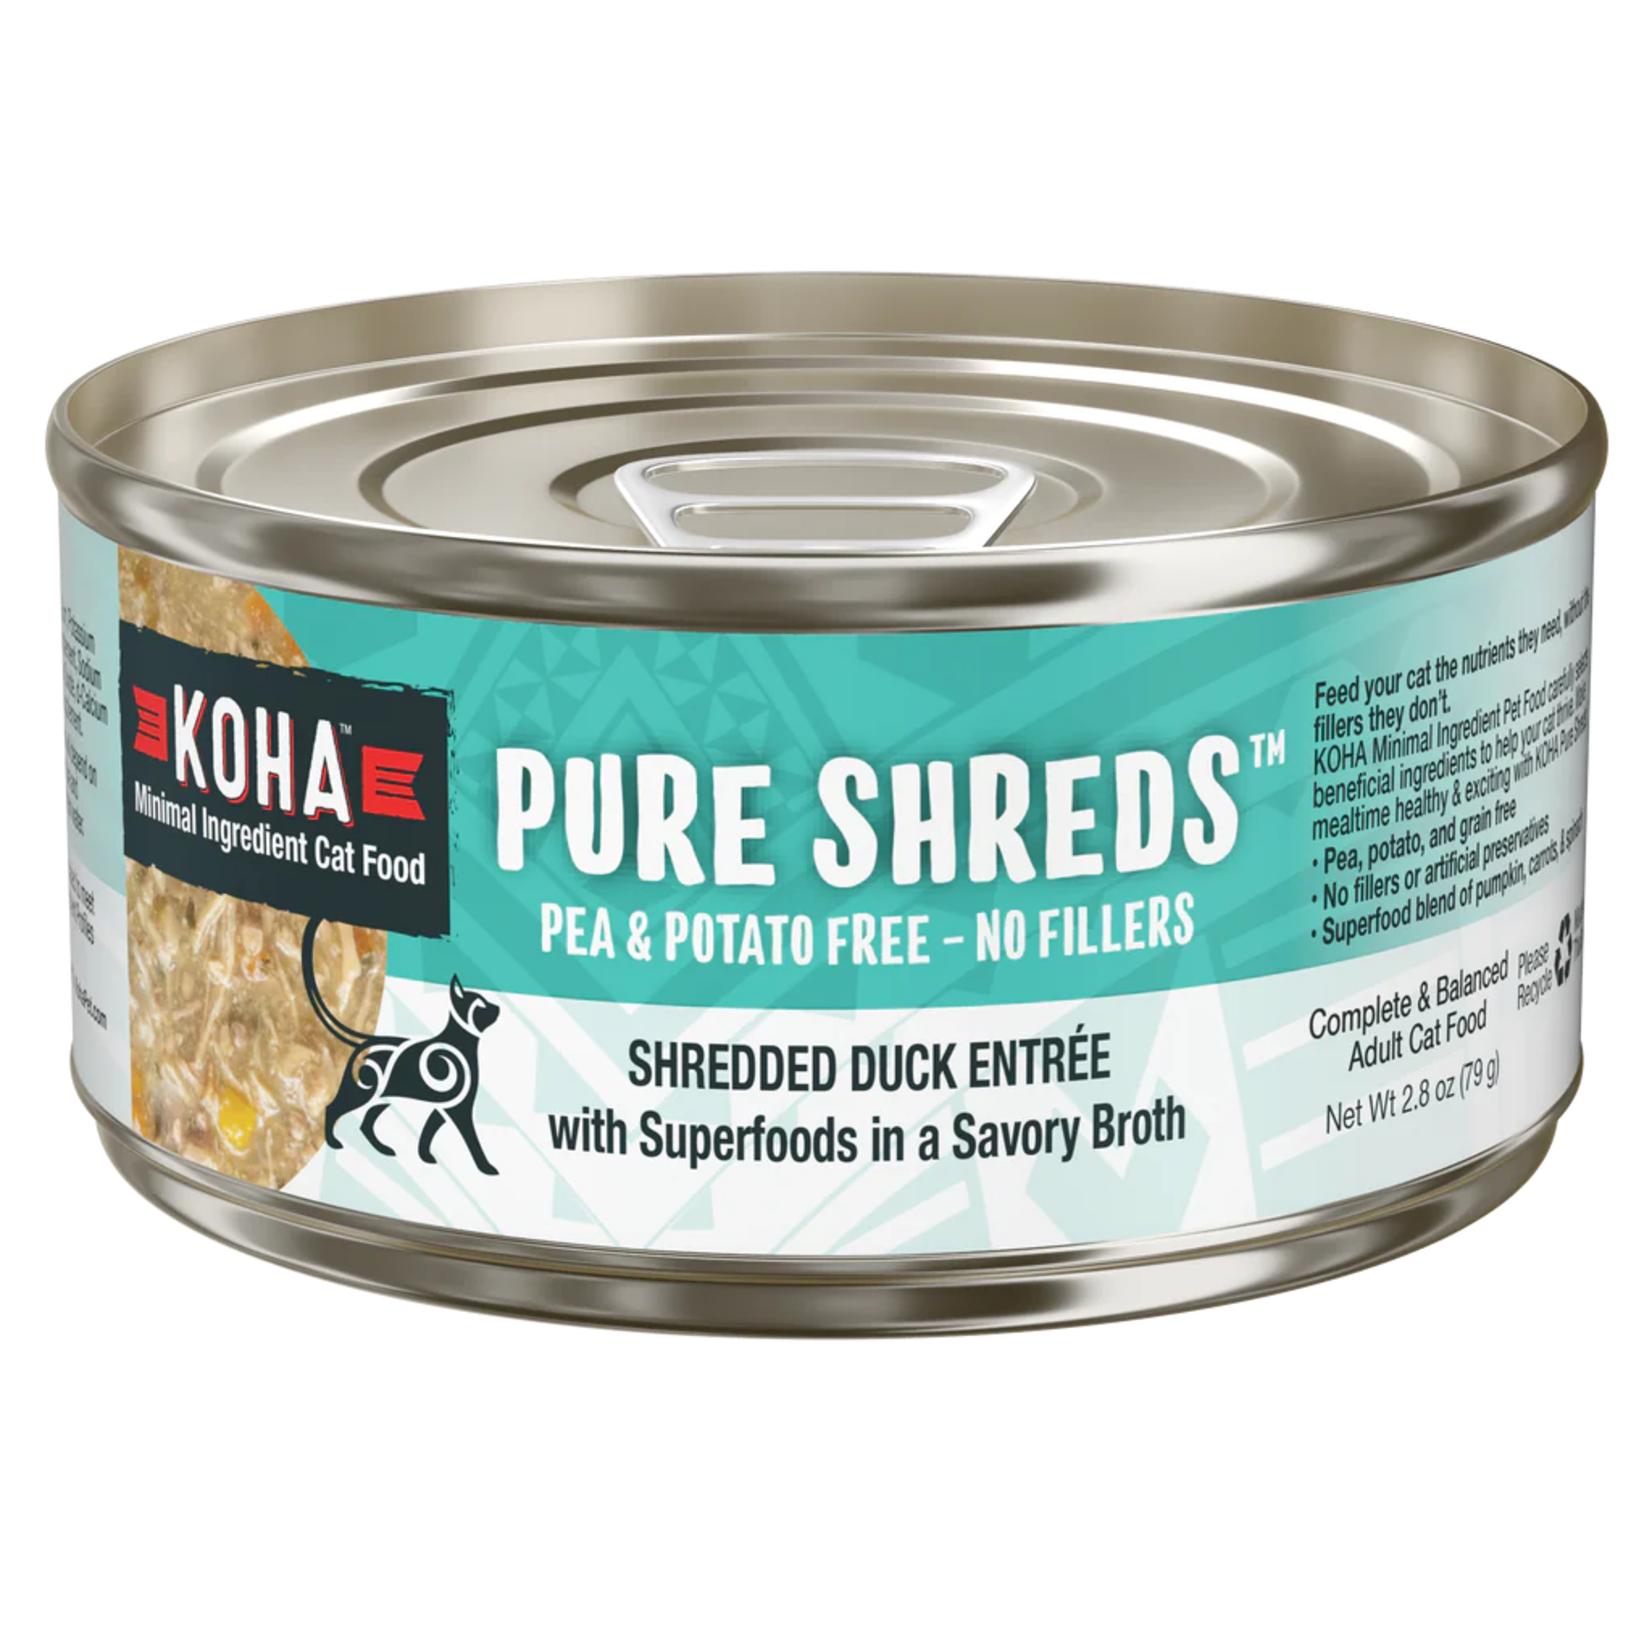 Koha Pet Food Koha Pet Food Pure Shreds - Shredded Duck Entrée for Cats